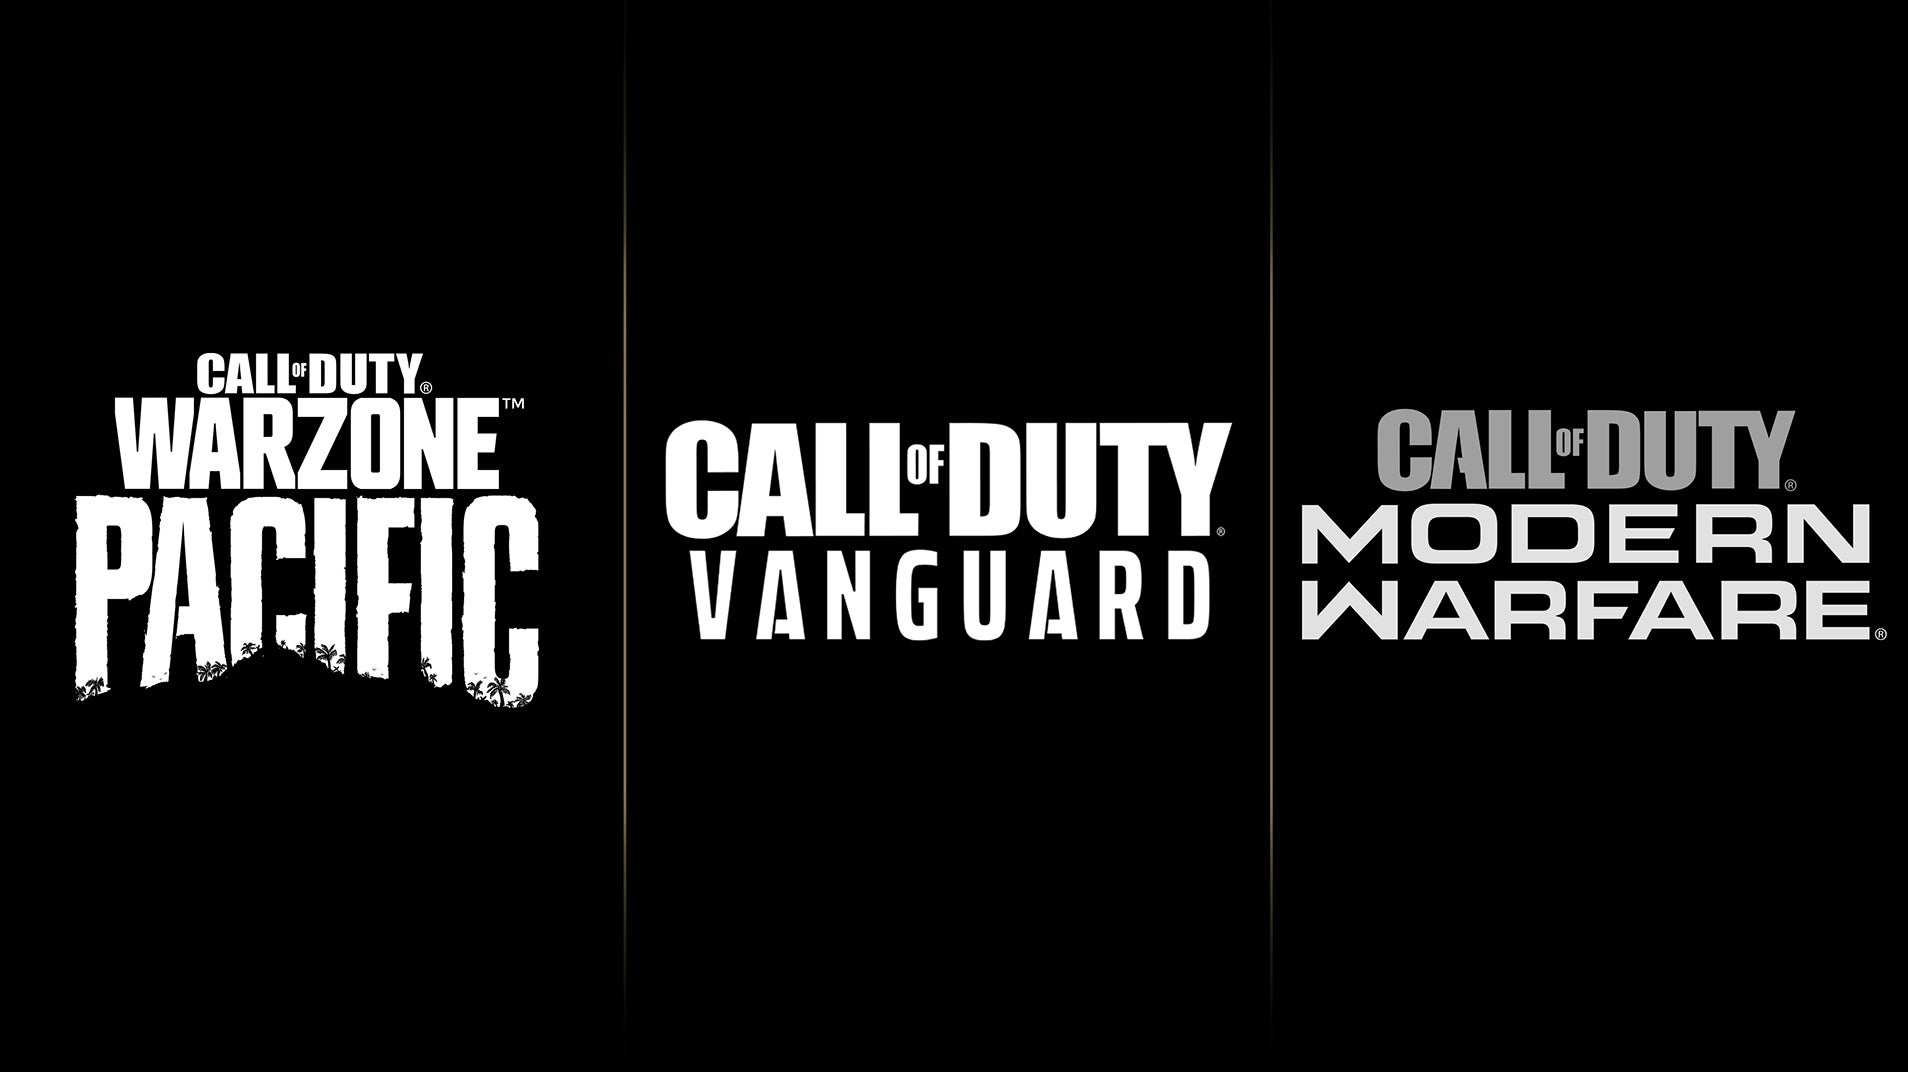 Imagen para Se retrasa la segunda temporada de Call of Duty Warzone y Vanguard